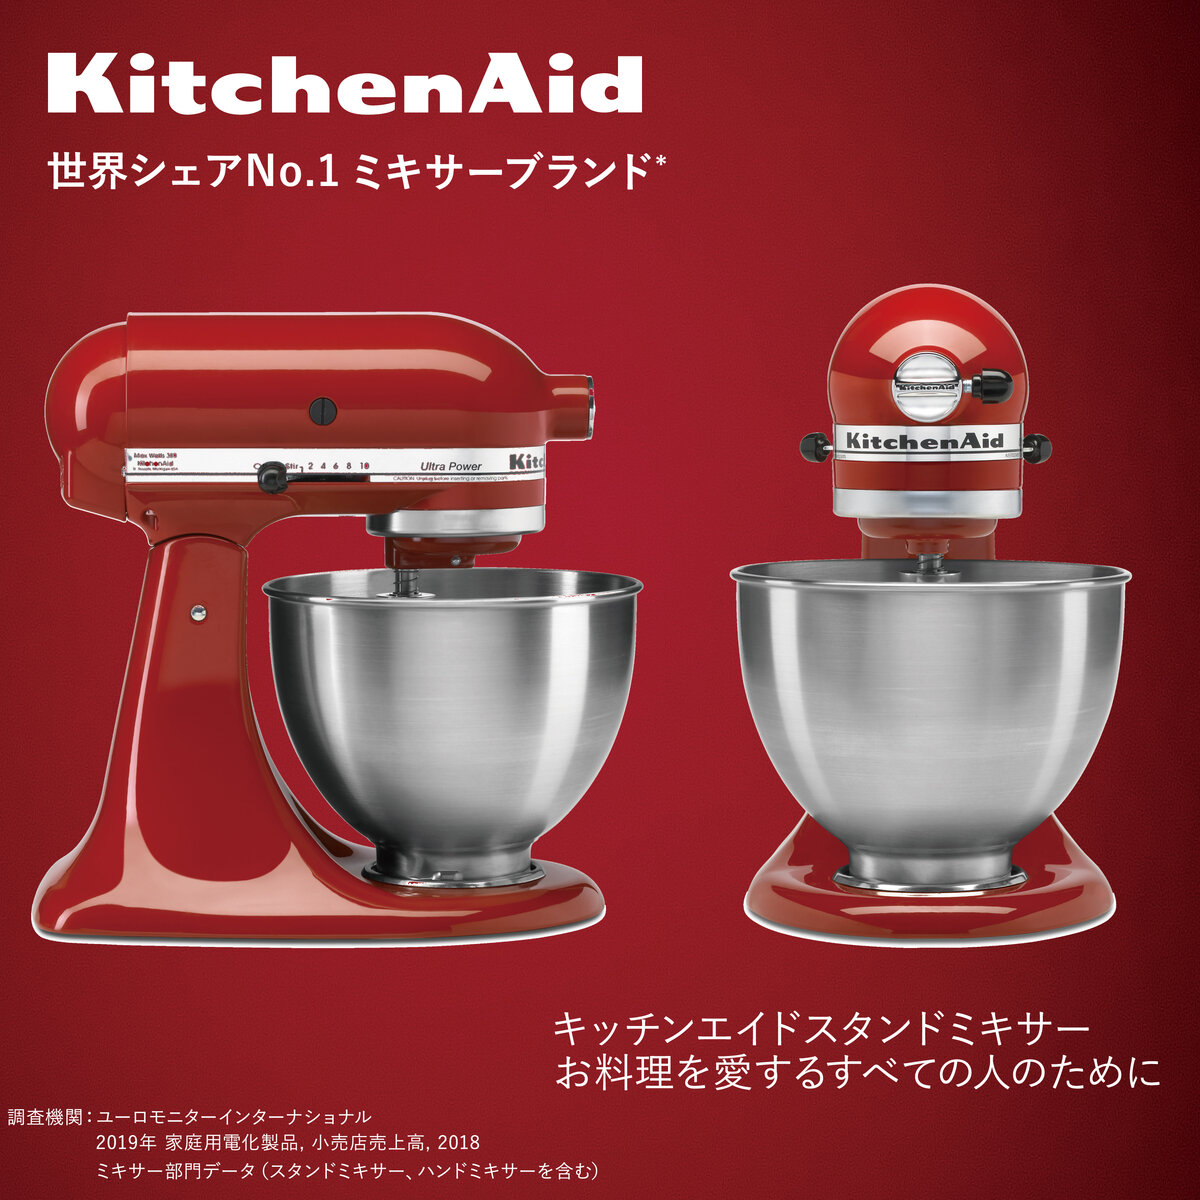 KitchenAid キッチンエイド スタンドミキサー 4.3L 赤